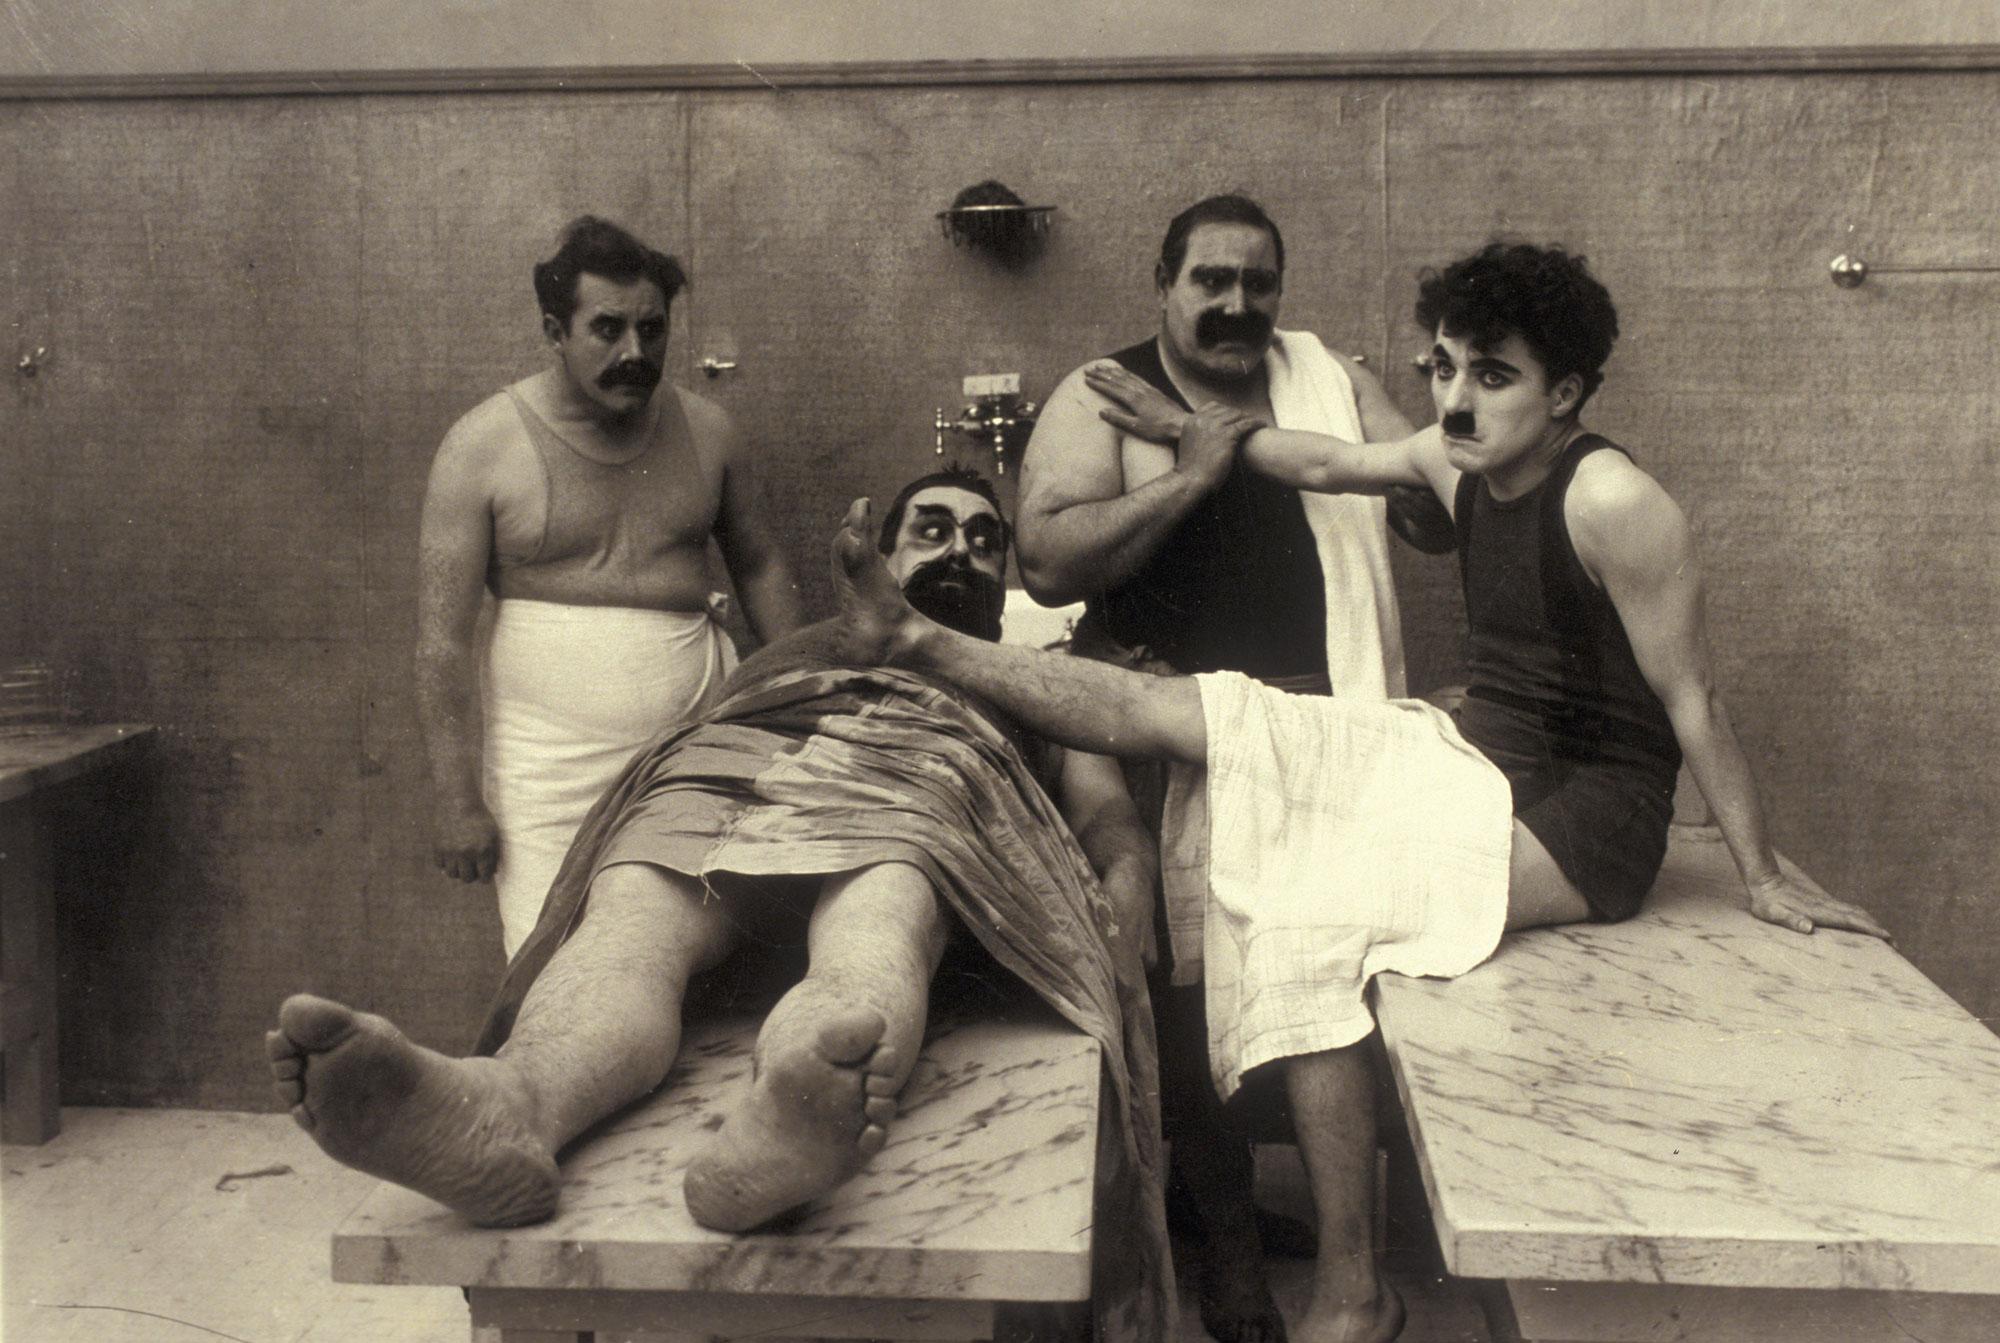 Le rapport au corps, capital pour Chaplin, ici dans "Charlot en cure" 1917 [Archives du 7eme Art / Photo12/AFP]